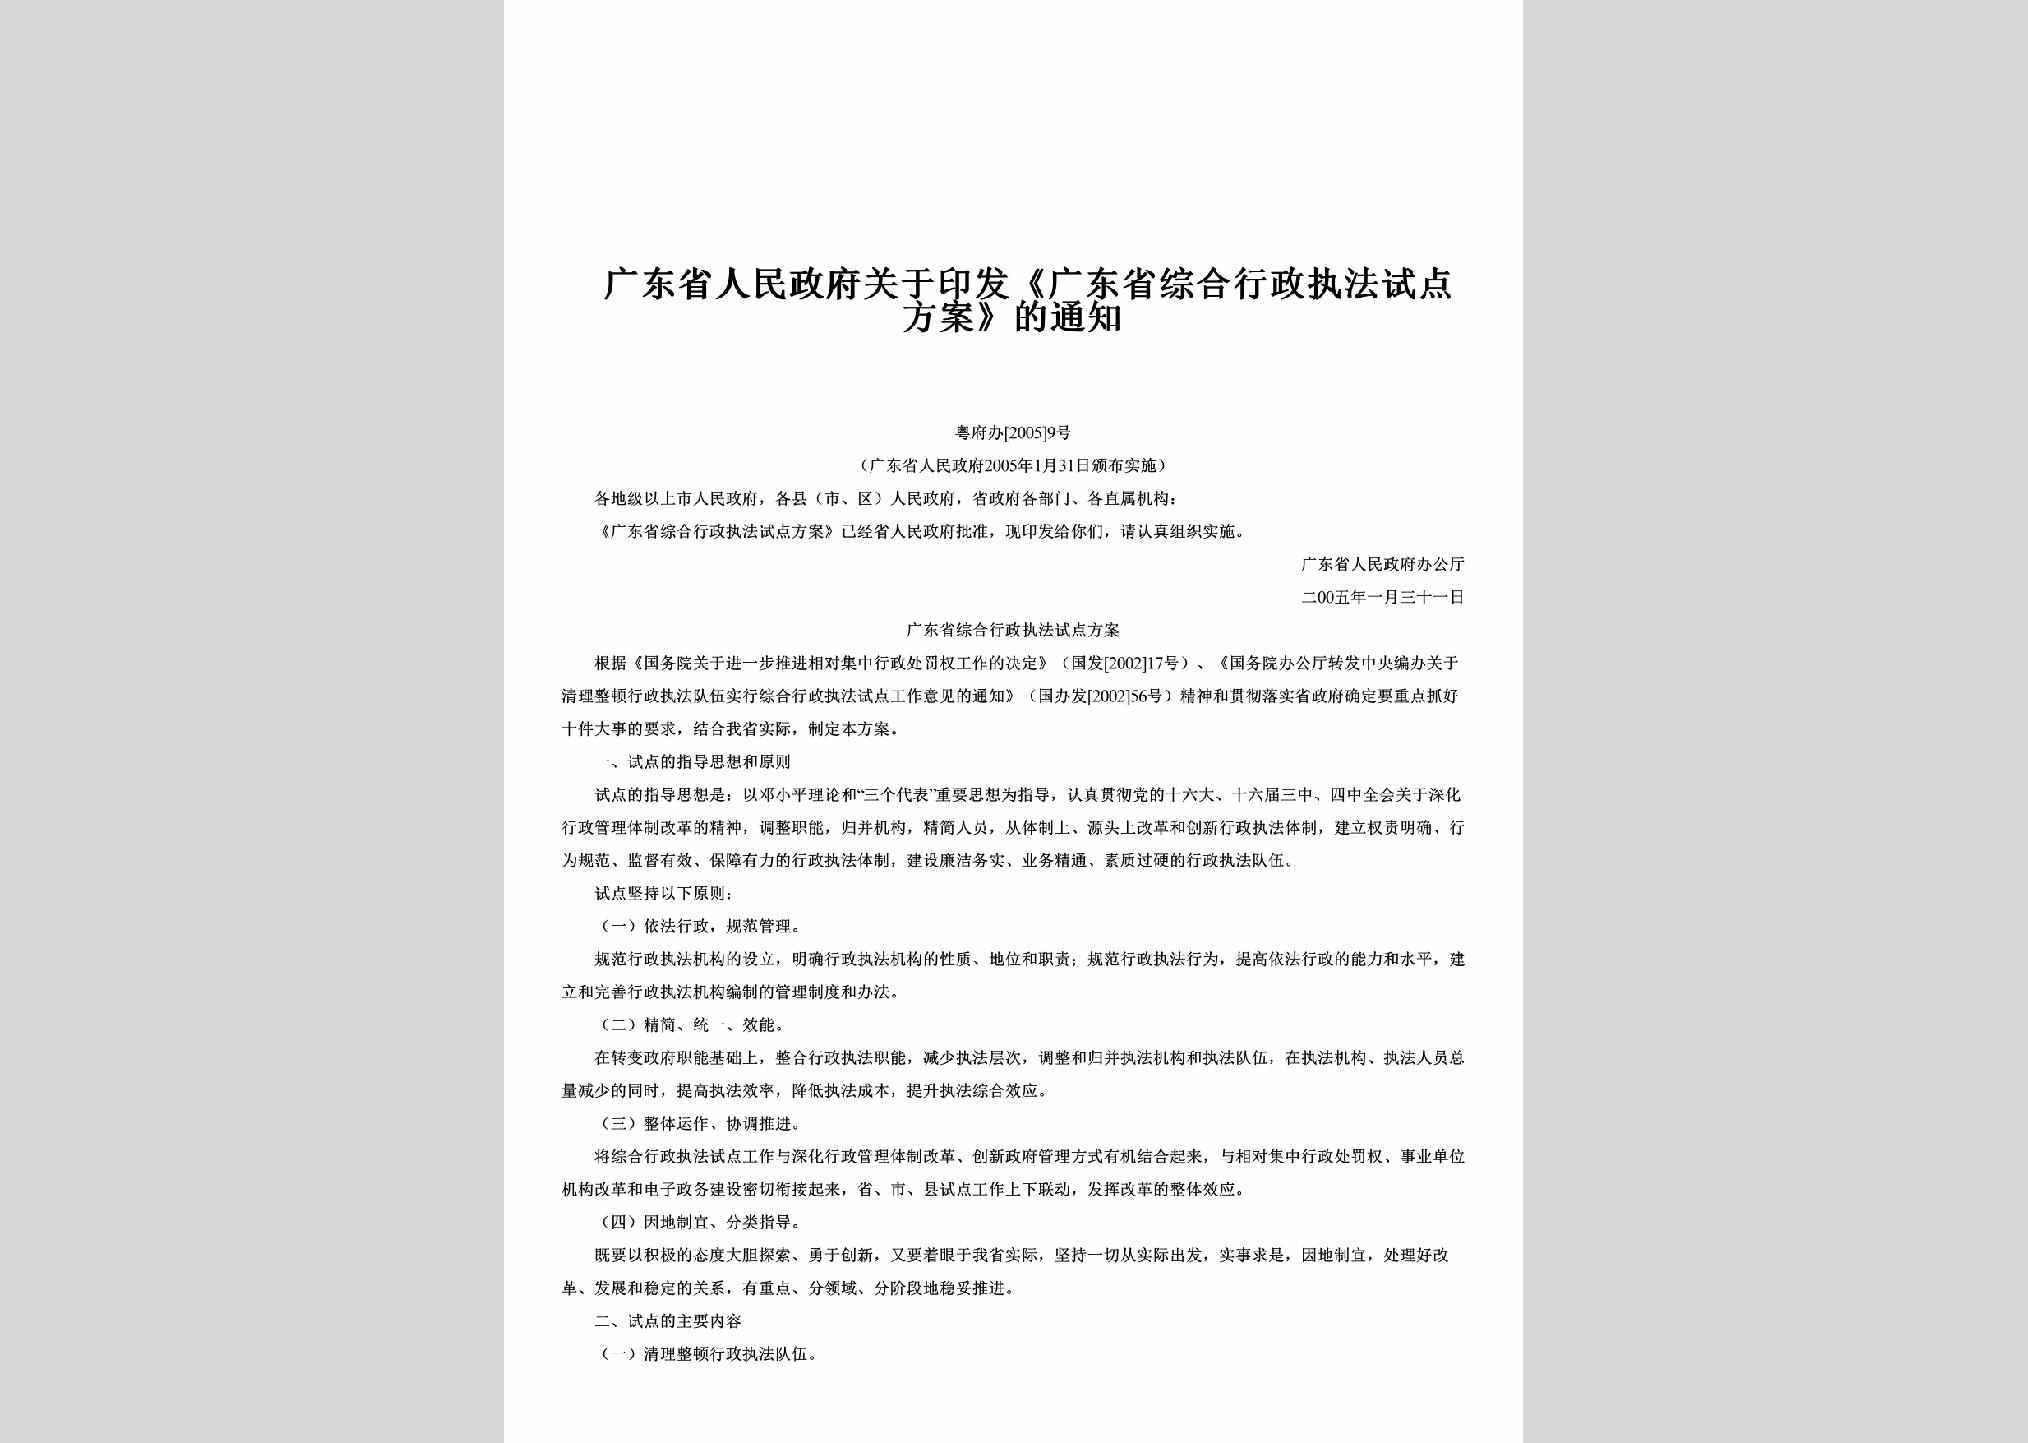 粤府办[2005]9号：关于印发《广东省综合行政执法试点方案》的通知